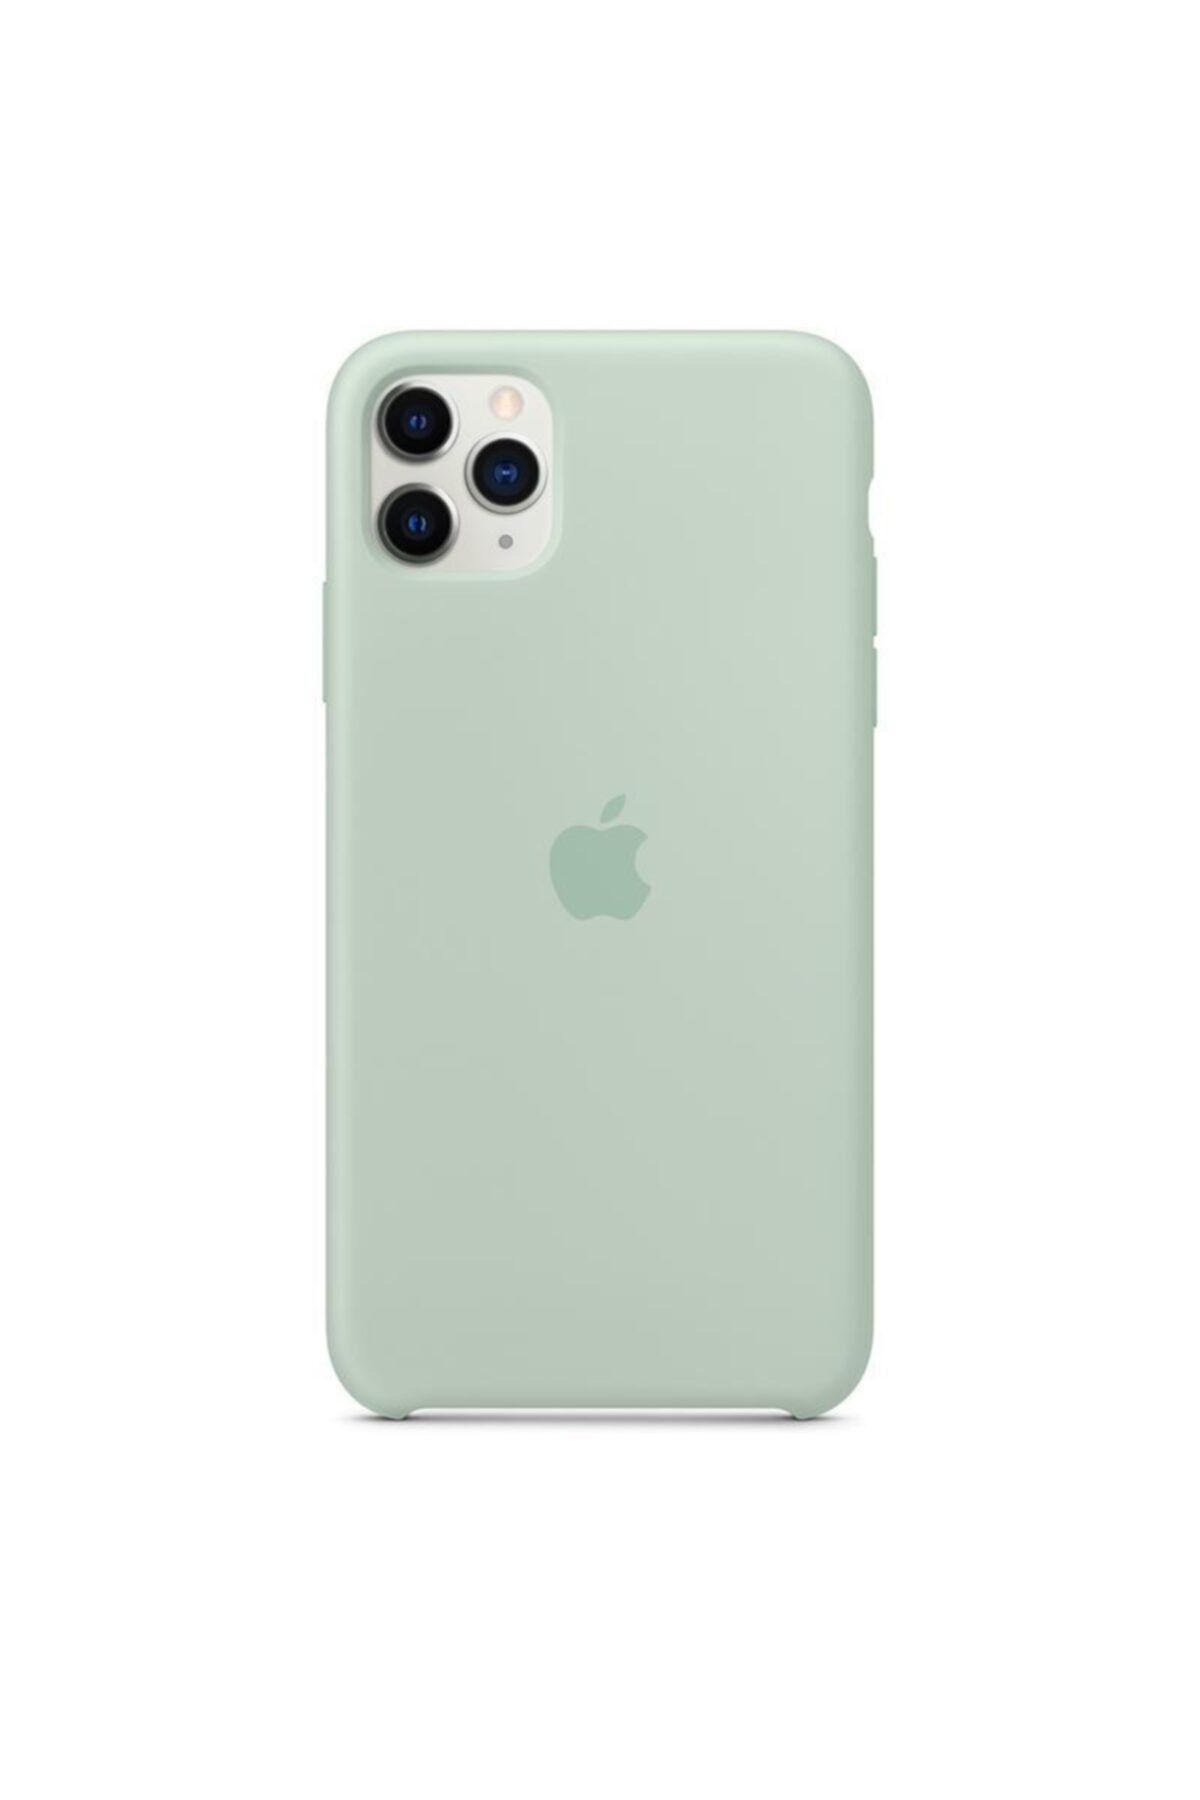 Apple Iphone 11 Pro Max Silikon Kılıf Su Yeşili - Mxm92zm/a